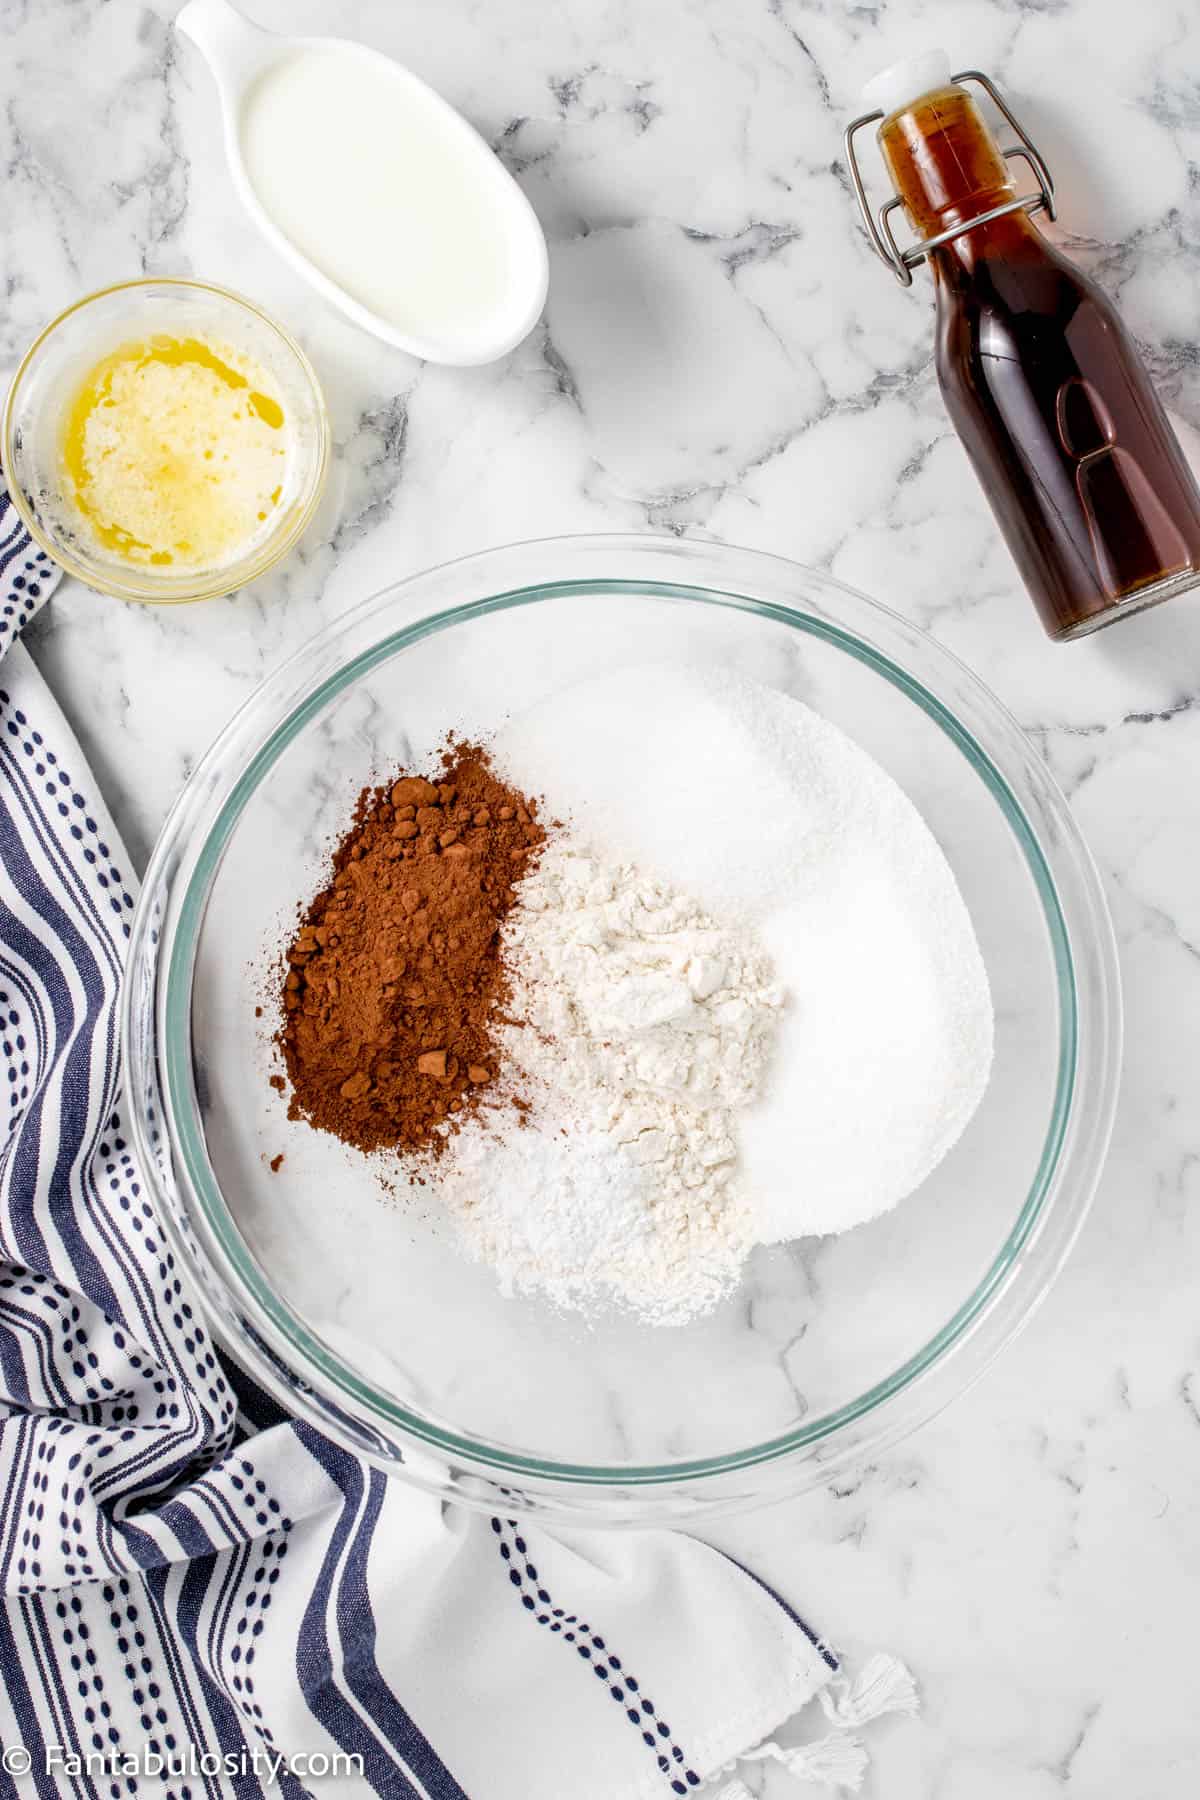 Flour, baking powder, salt, sugar, and cocoa in a glass bowl.